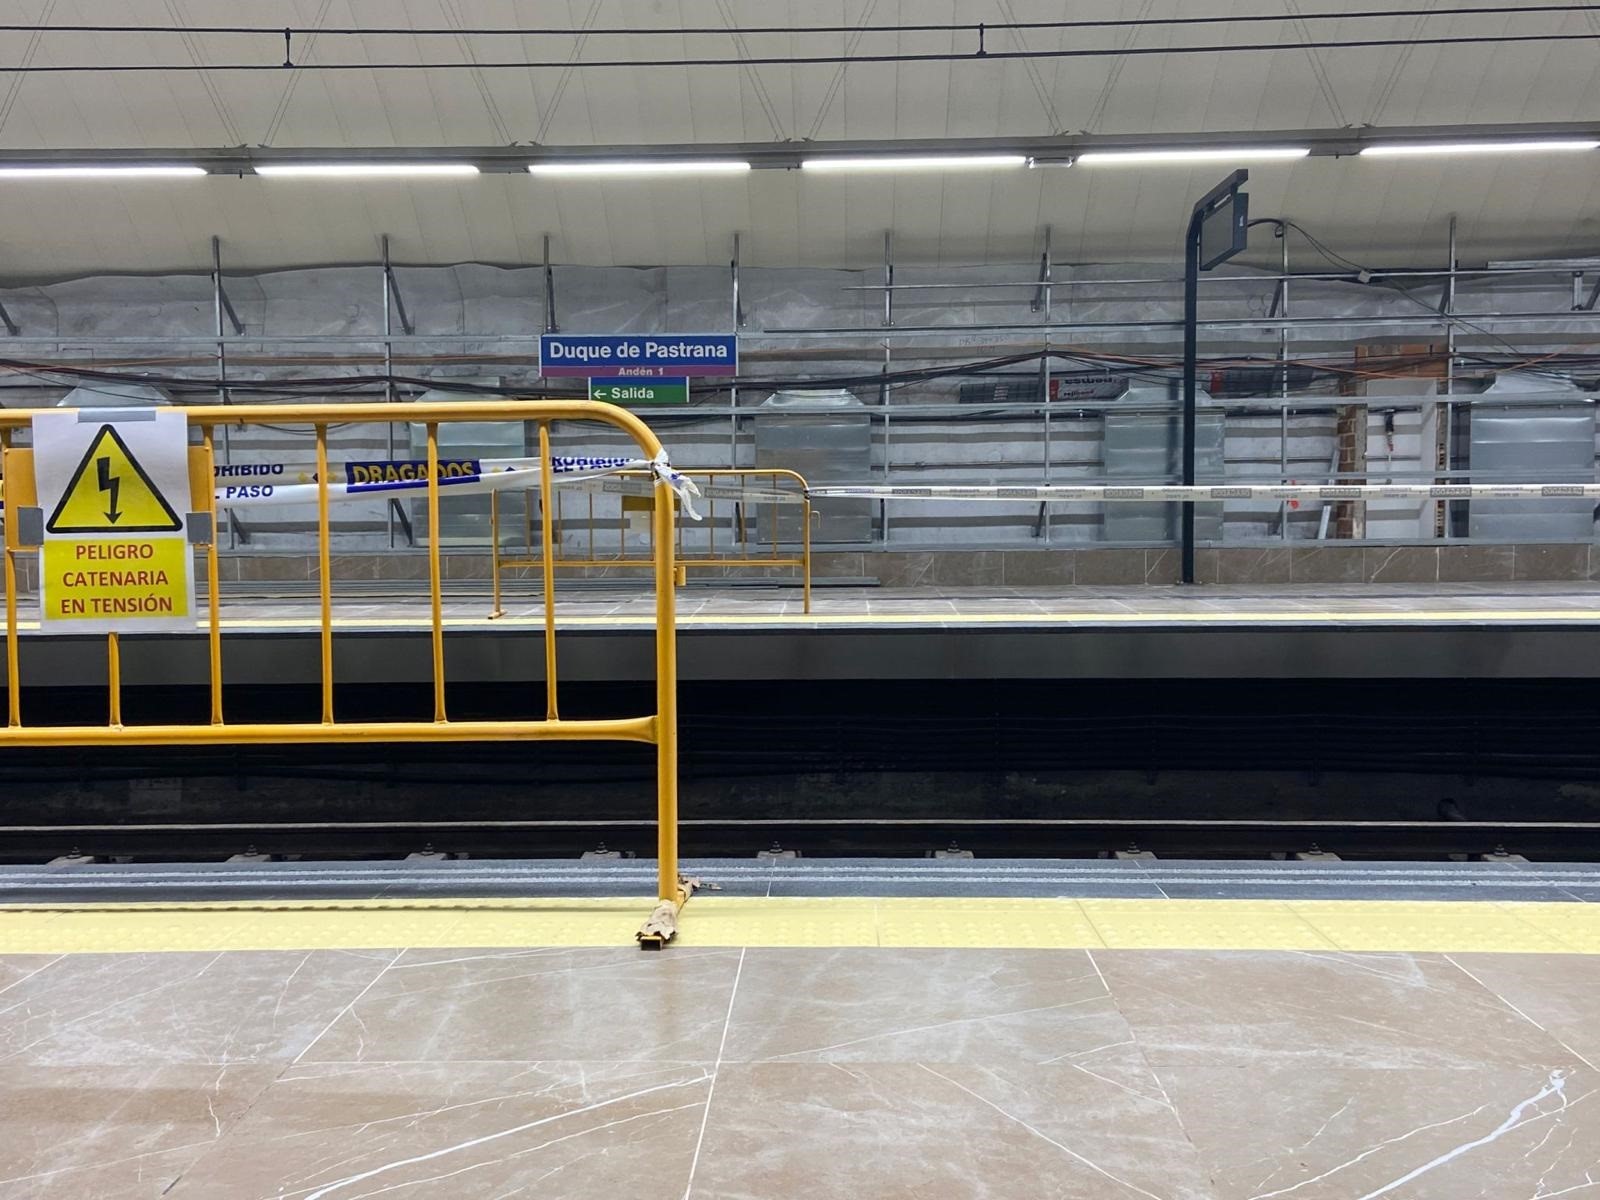 31-08-2021 Obras de mejora en la estación de Metro de Duque de Pastrana.

Las obras continuarán hasta final de año pero serán compatibles con la prestación del servicio

POLITICA 
